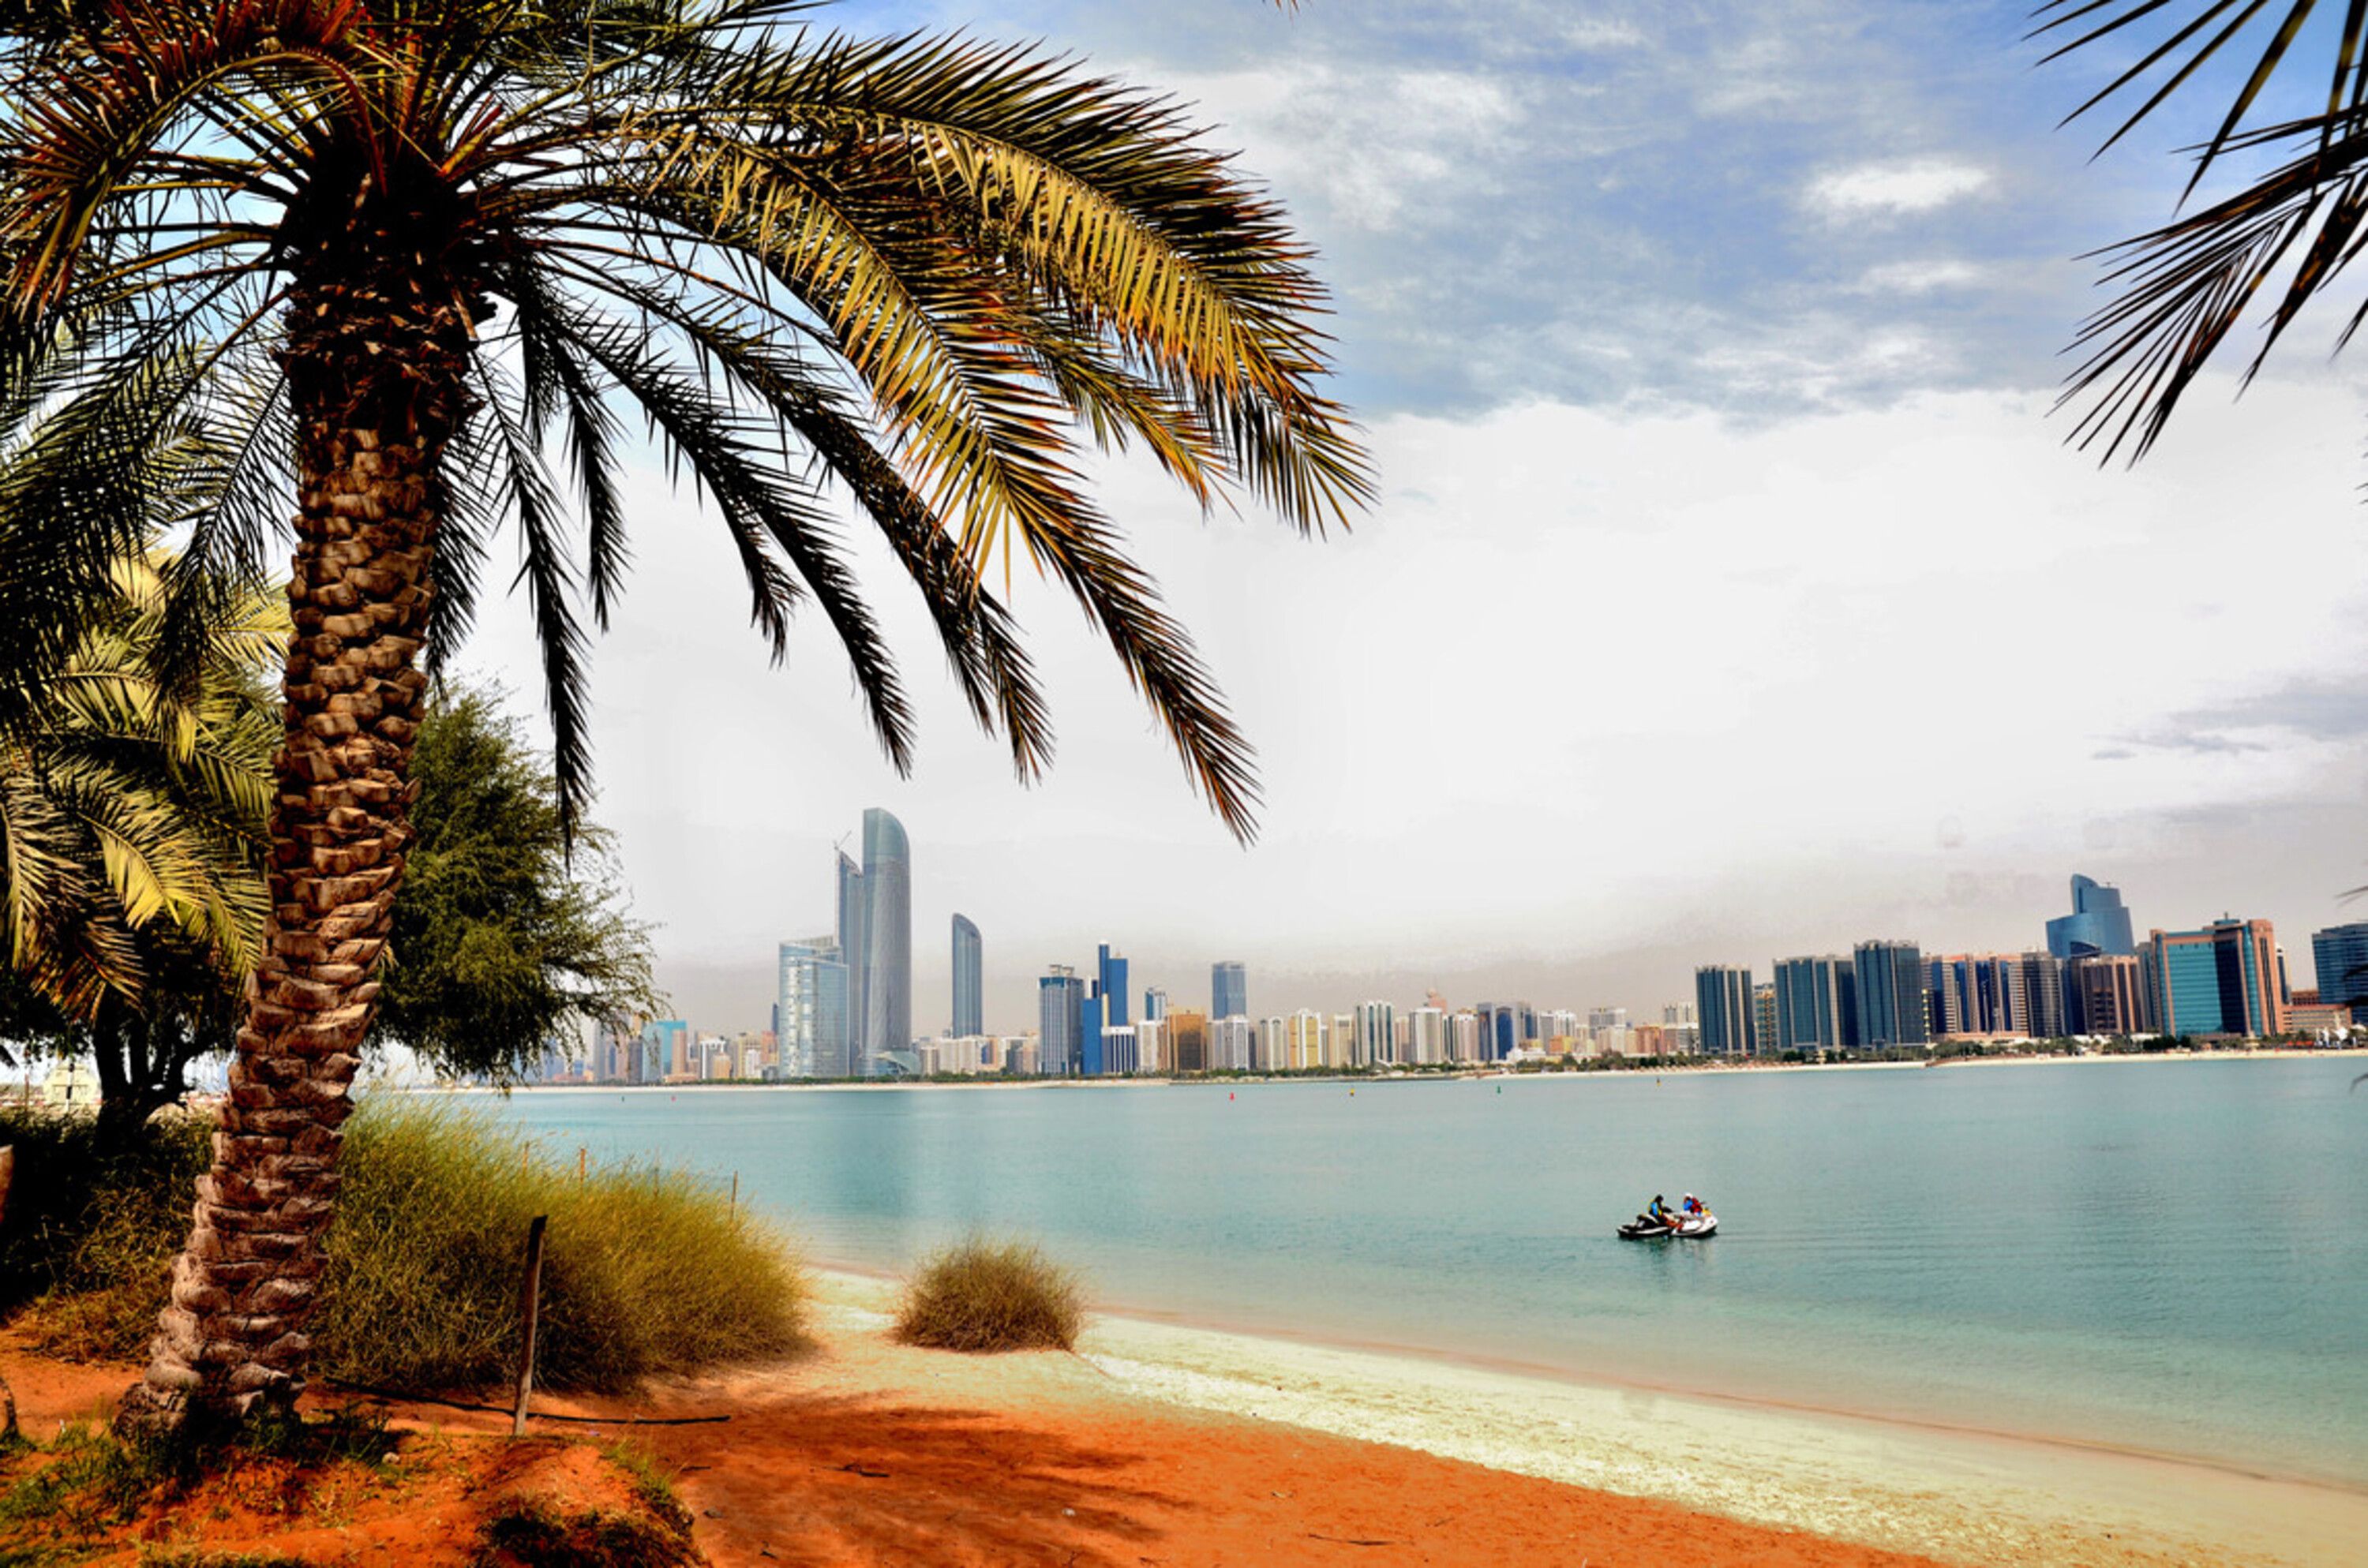 تتمتع جزر أبوظبي بجمال طبيعي فريد وتاريخ غني يجعلها وجهة سياحية مميزة في الإمارات العربية المتحدة.